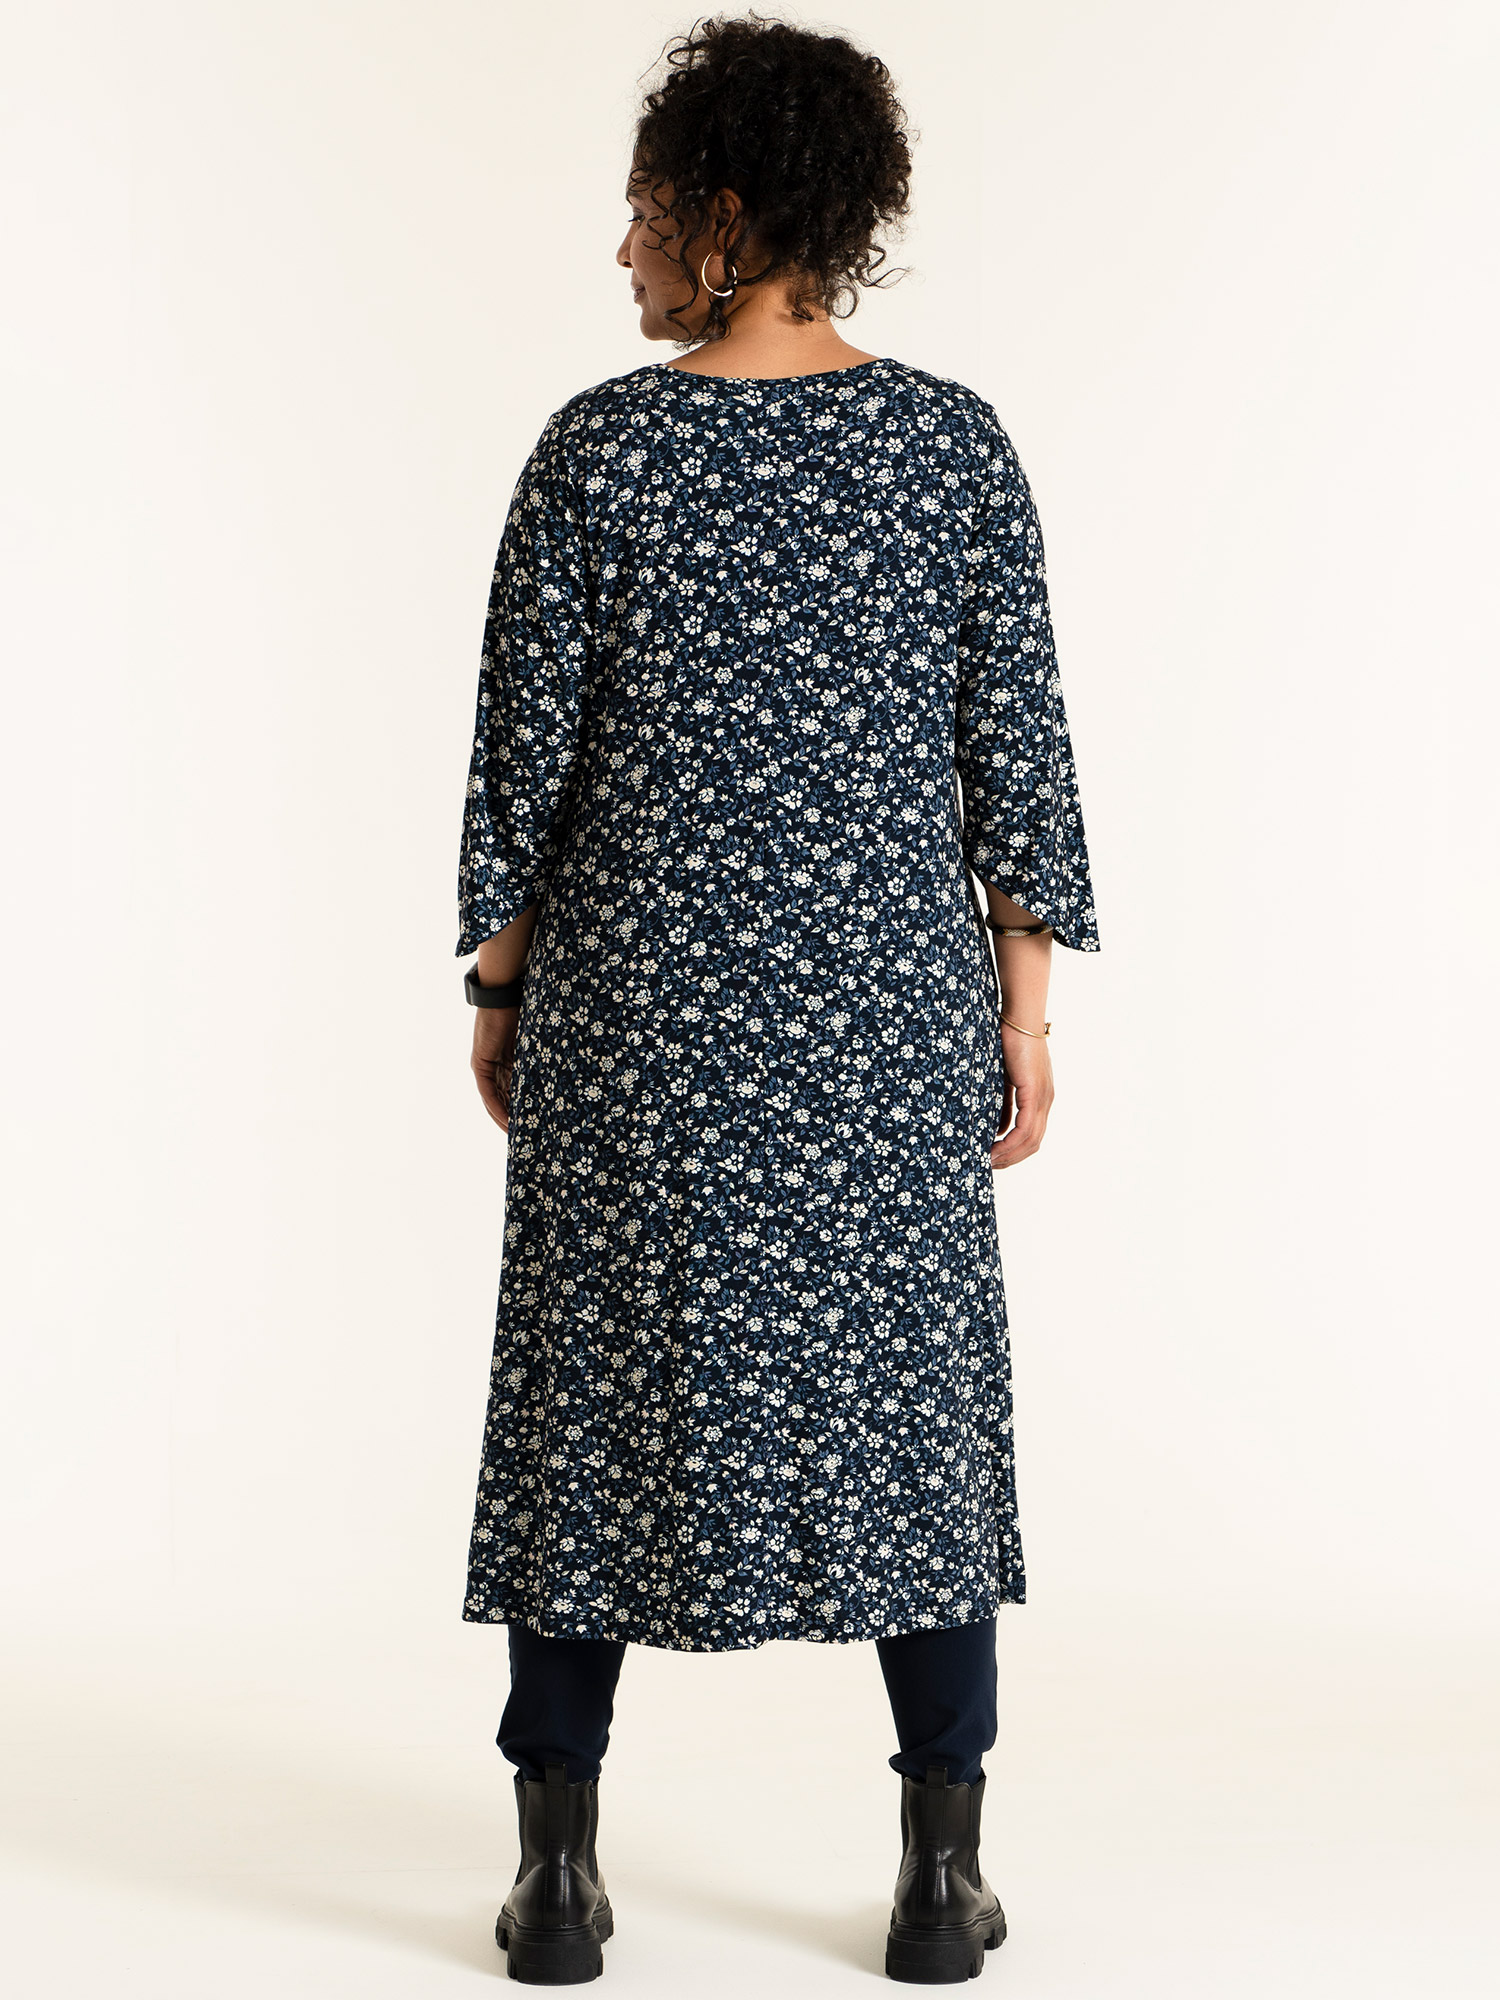 PERNILLE - Blå jersey kjole med blomster print fra Studio